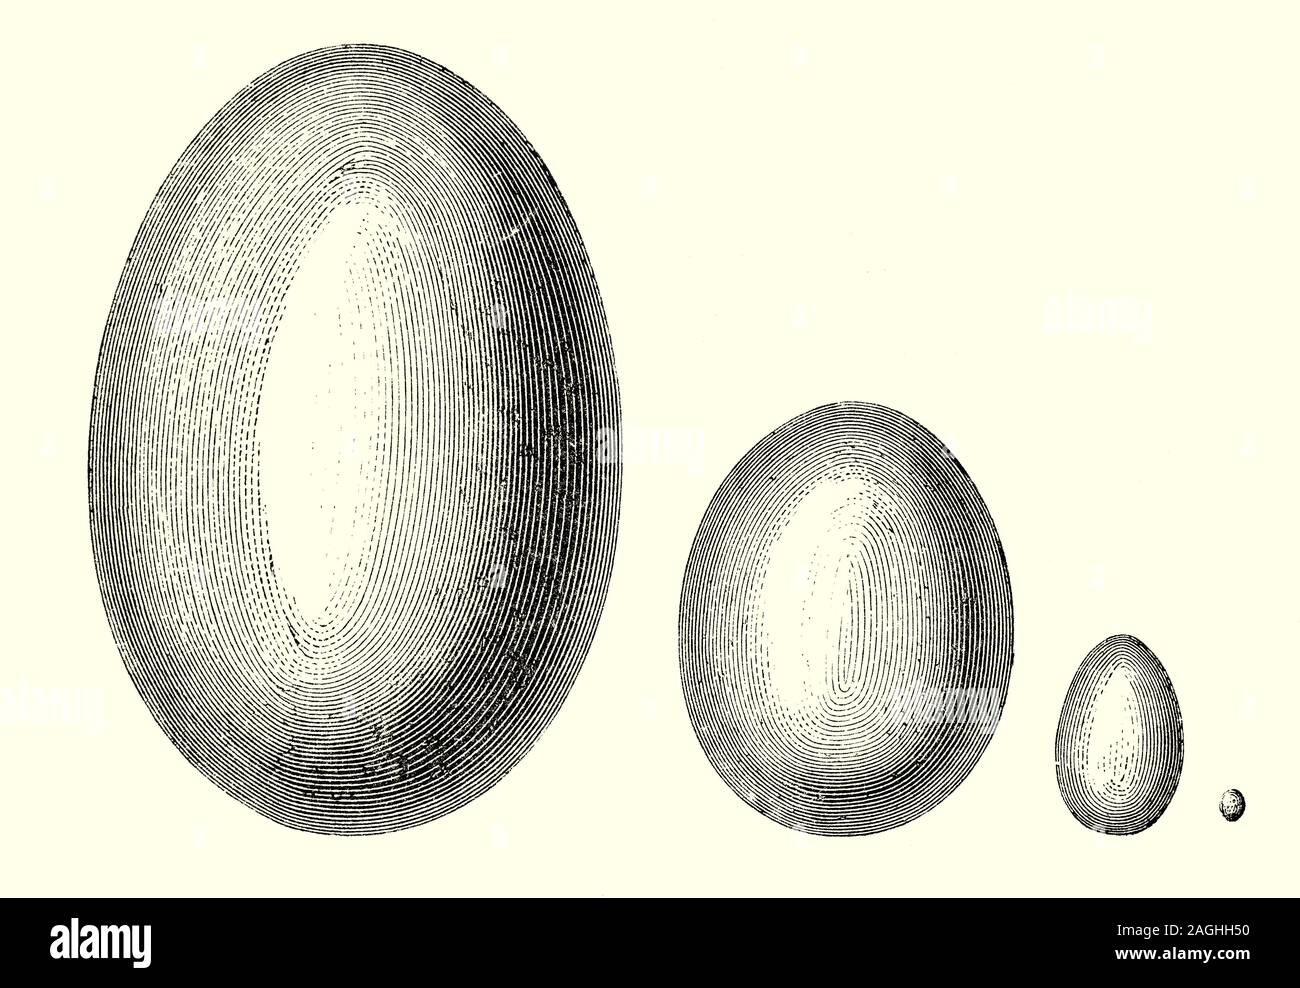 Ornithologie: Zucht und Nester: eine vergleichende Darstellung der Größe  von Vogel Eier von verschiedenen Arten. Ei Größe ist proportional zur Größe  der erwachsenen Vogel zu sein, von der die Hälfte Gramm ei